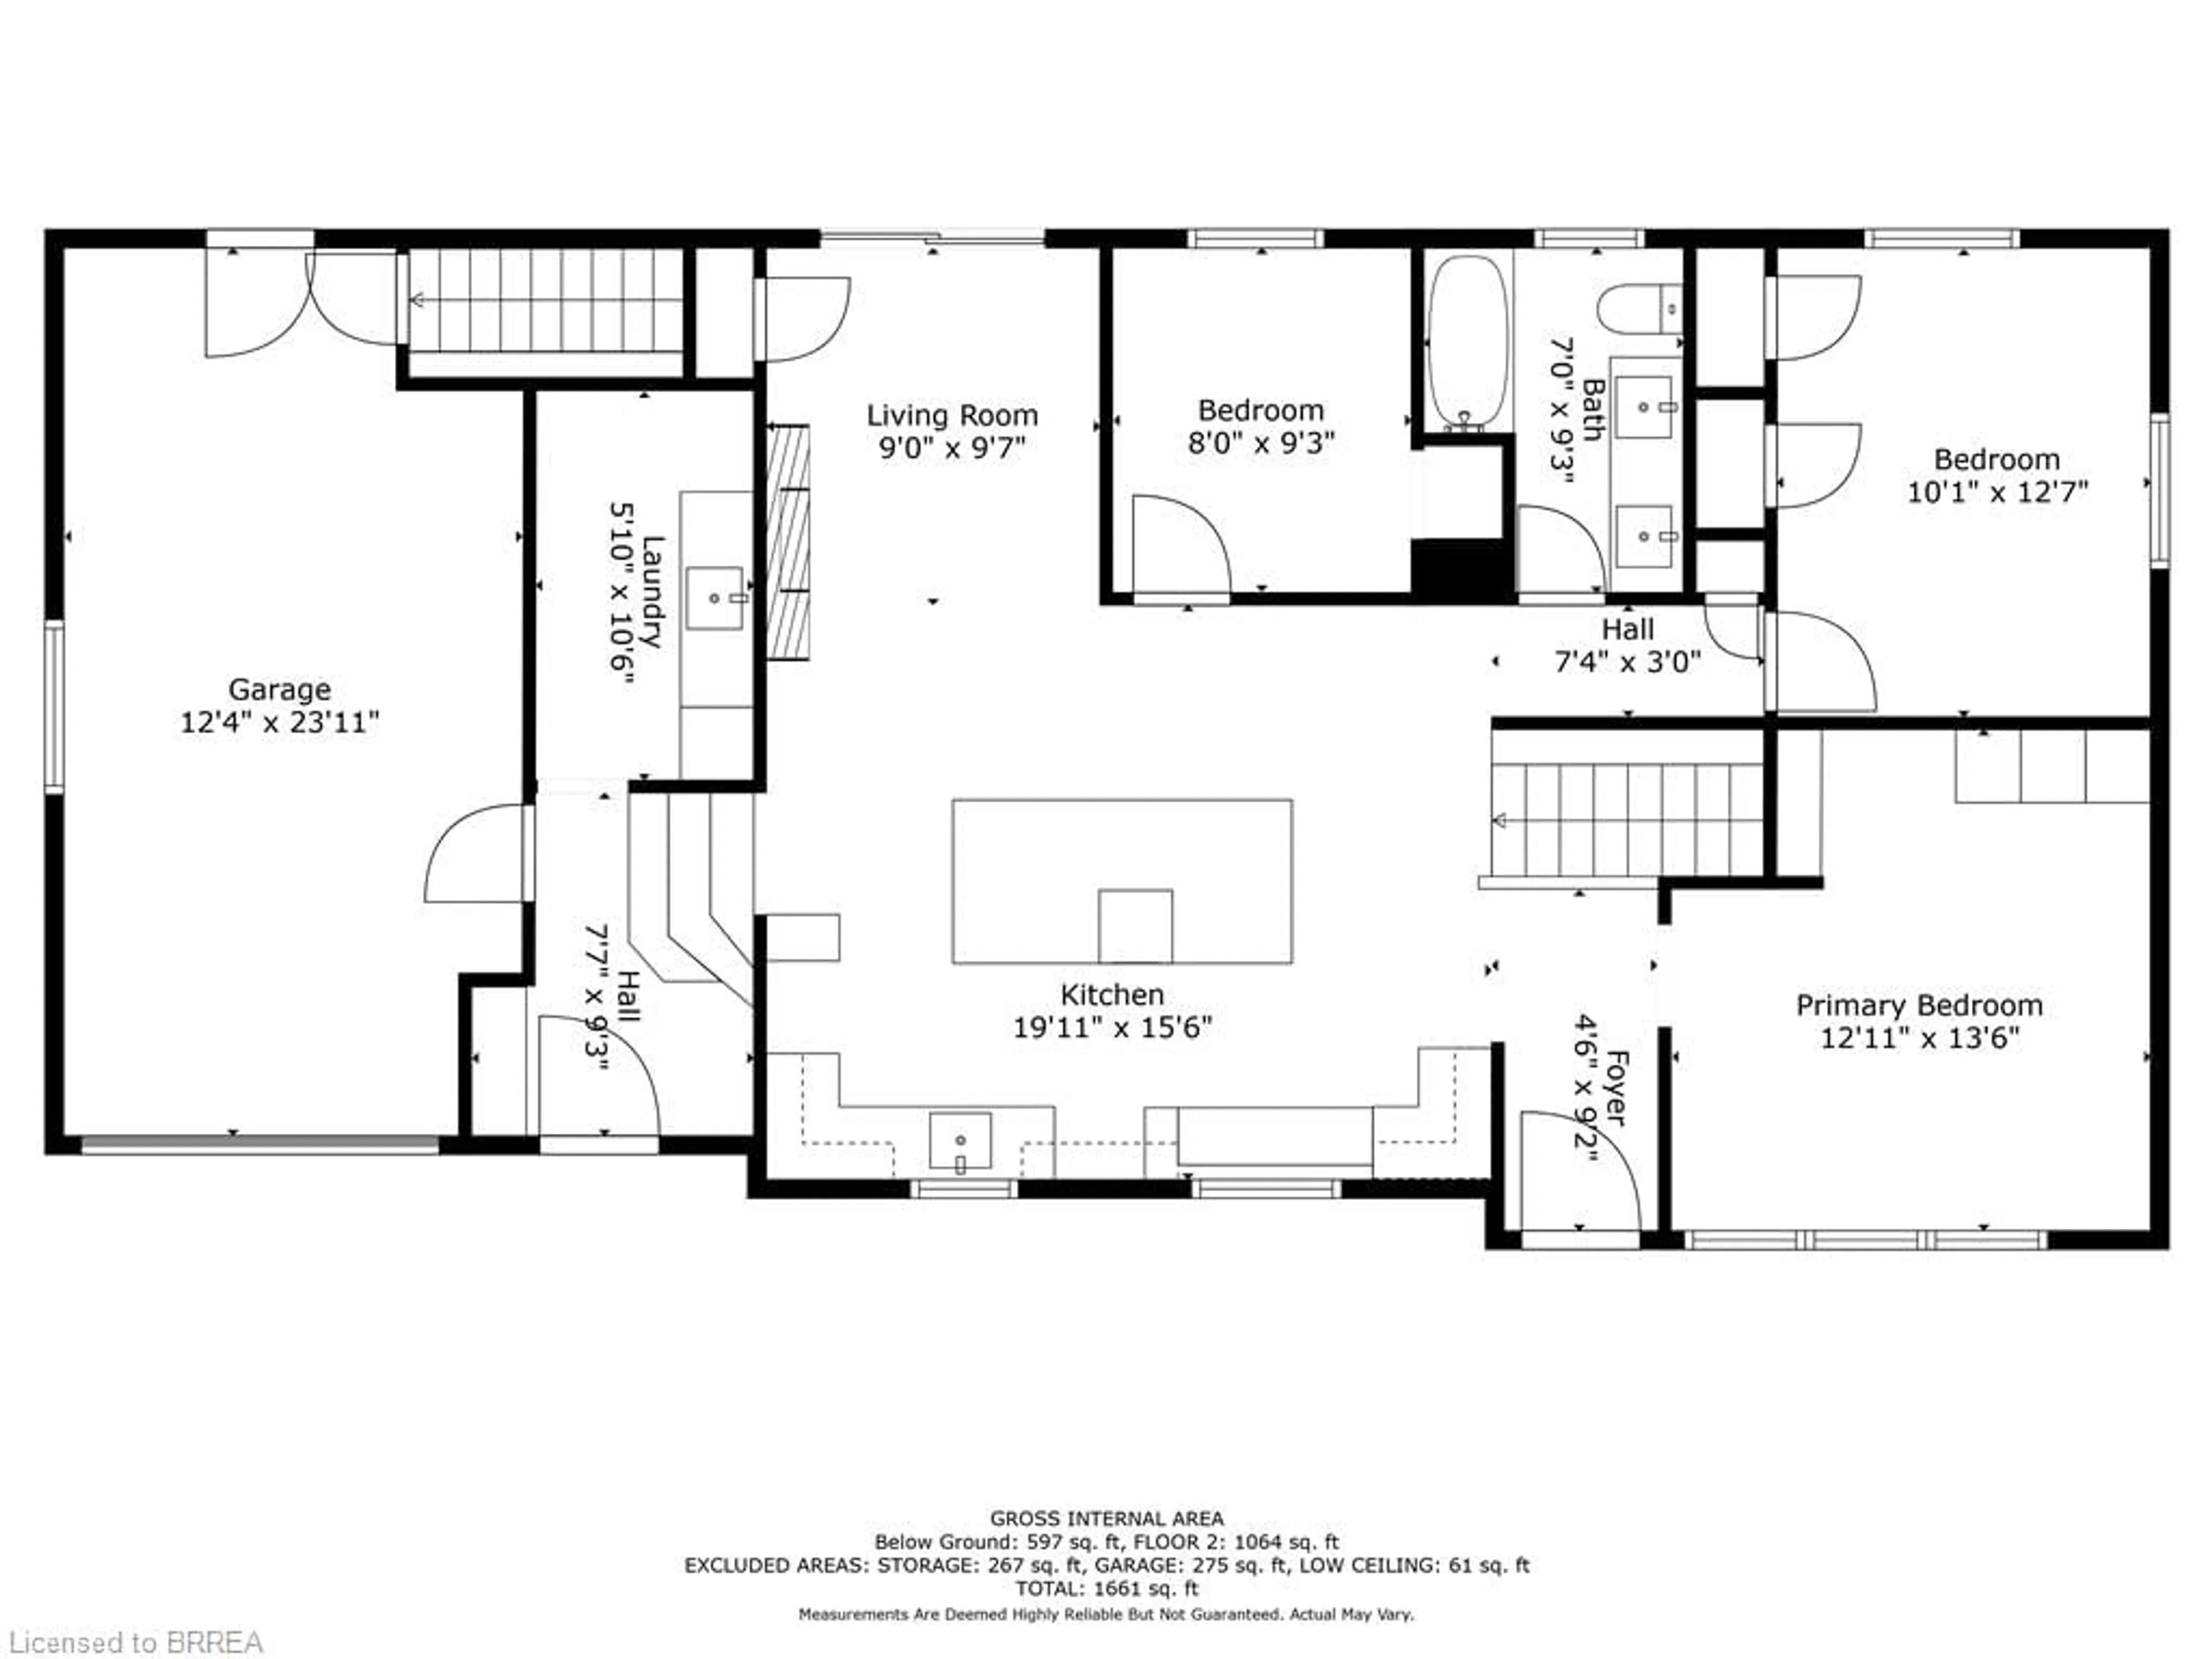 Floor plan for 423 Mcdowell Rd, Simcoe Ontario N3Y 4J9